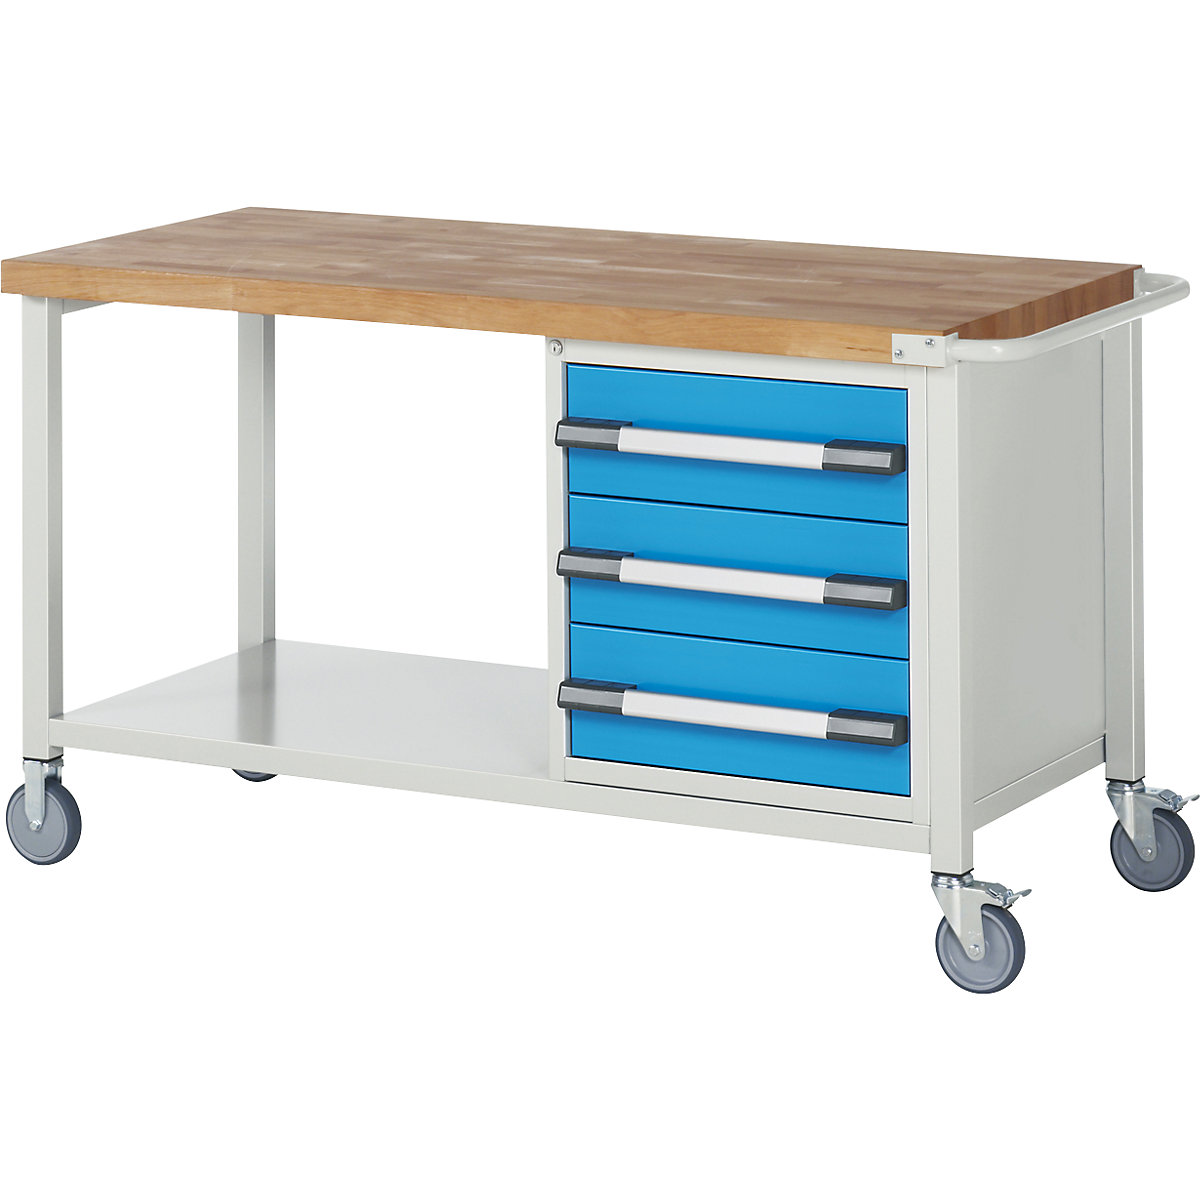 Series 8 mobile workbench, frame system – eurokraft pro, 3 drawers, storage shelf, WxD 1500 x 700 mm-6